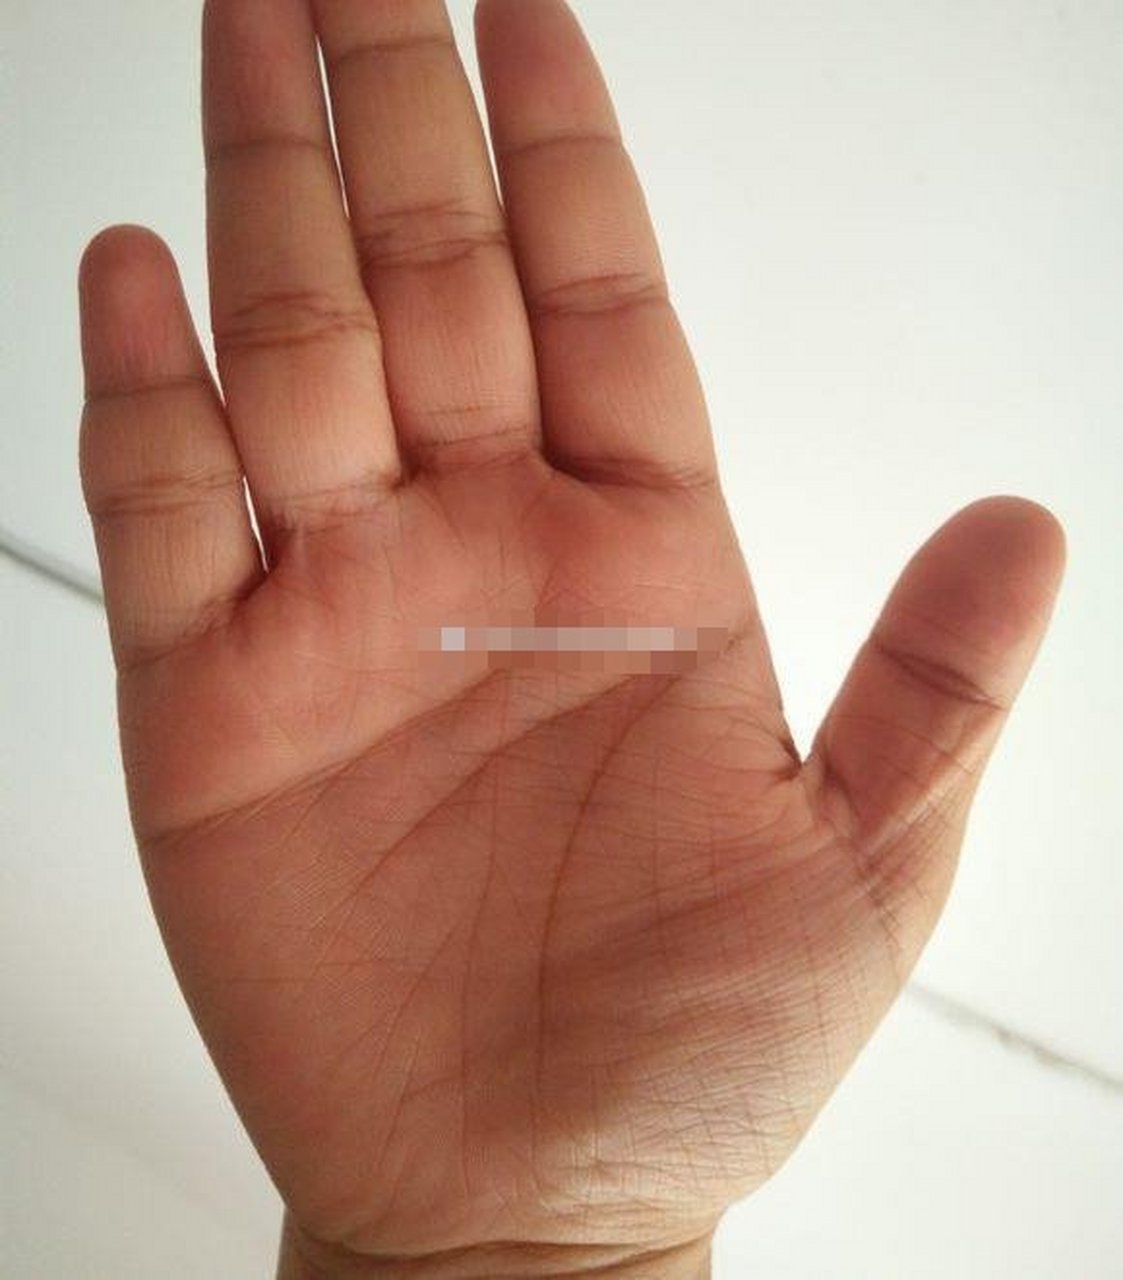 女人掌纹芜杂女性的掌纹大局部都是比拟芜杂的,很少见到掌纹十分明晰